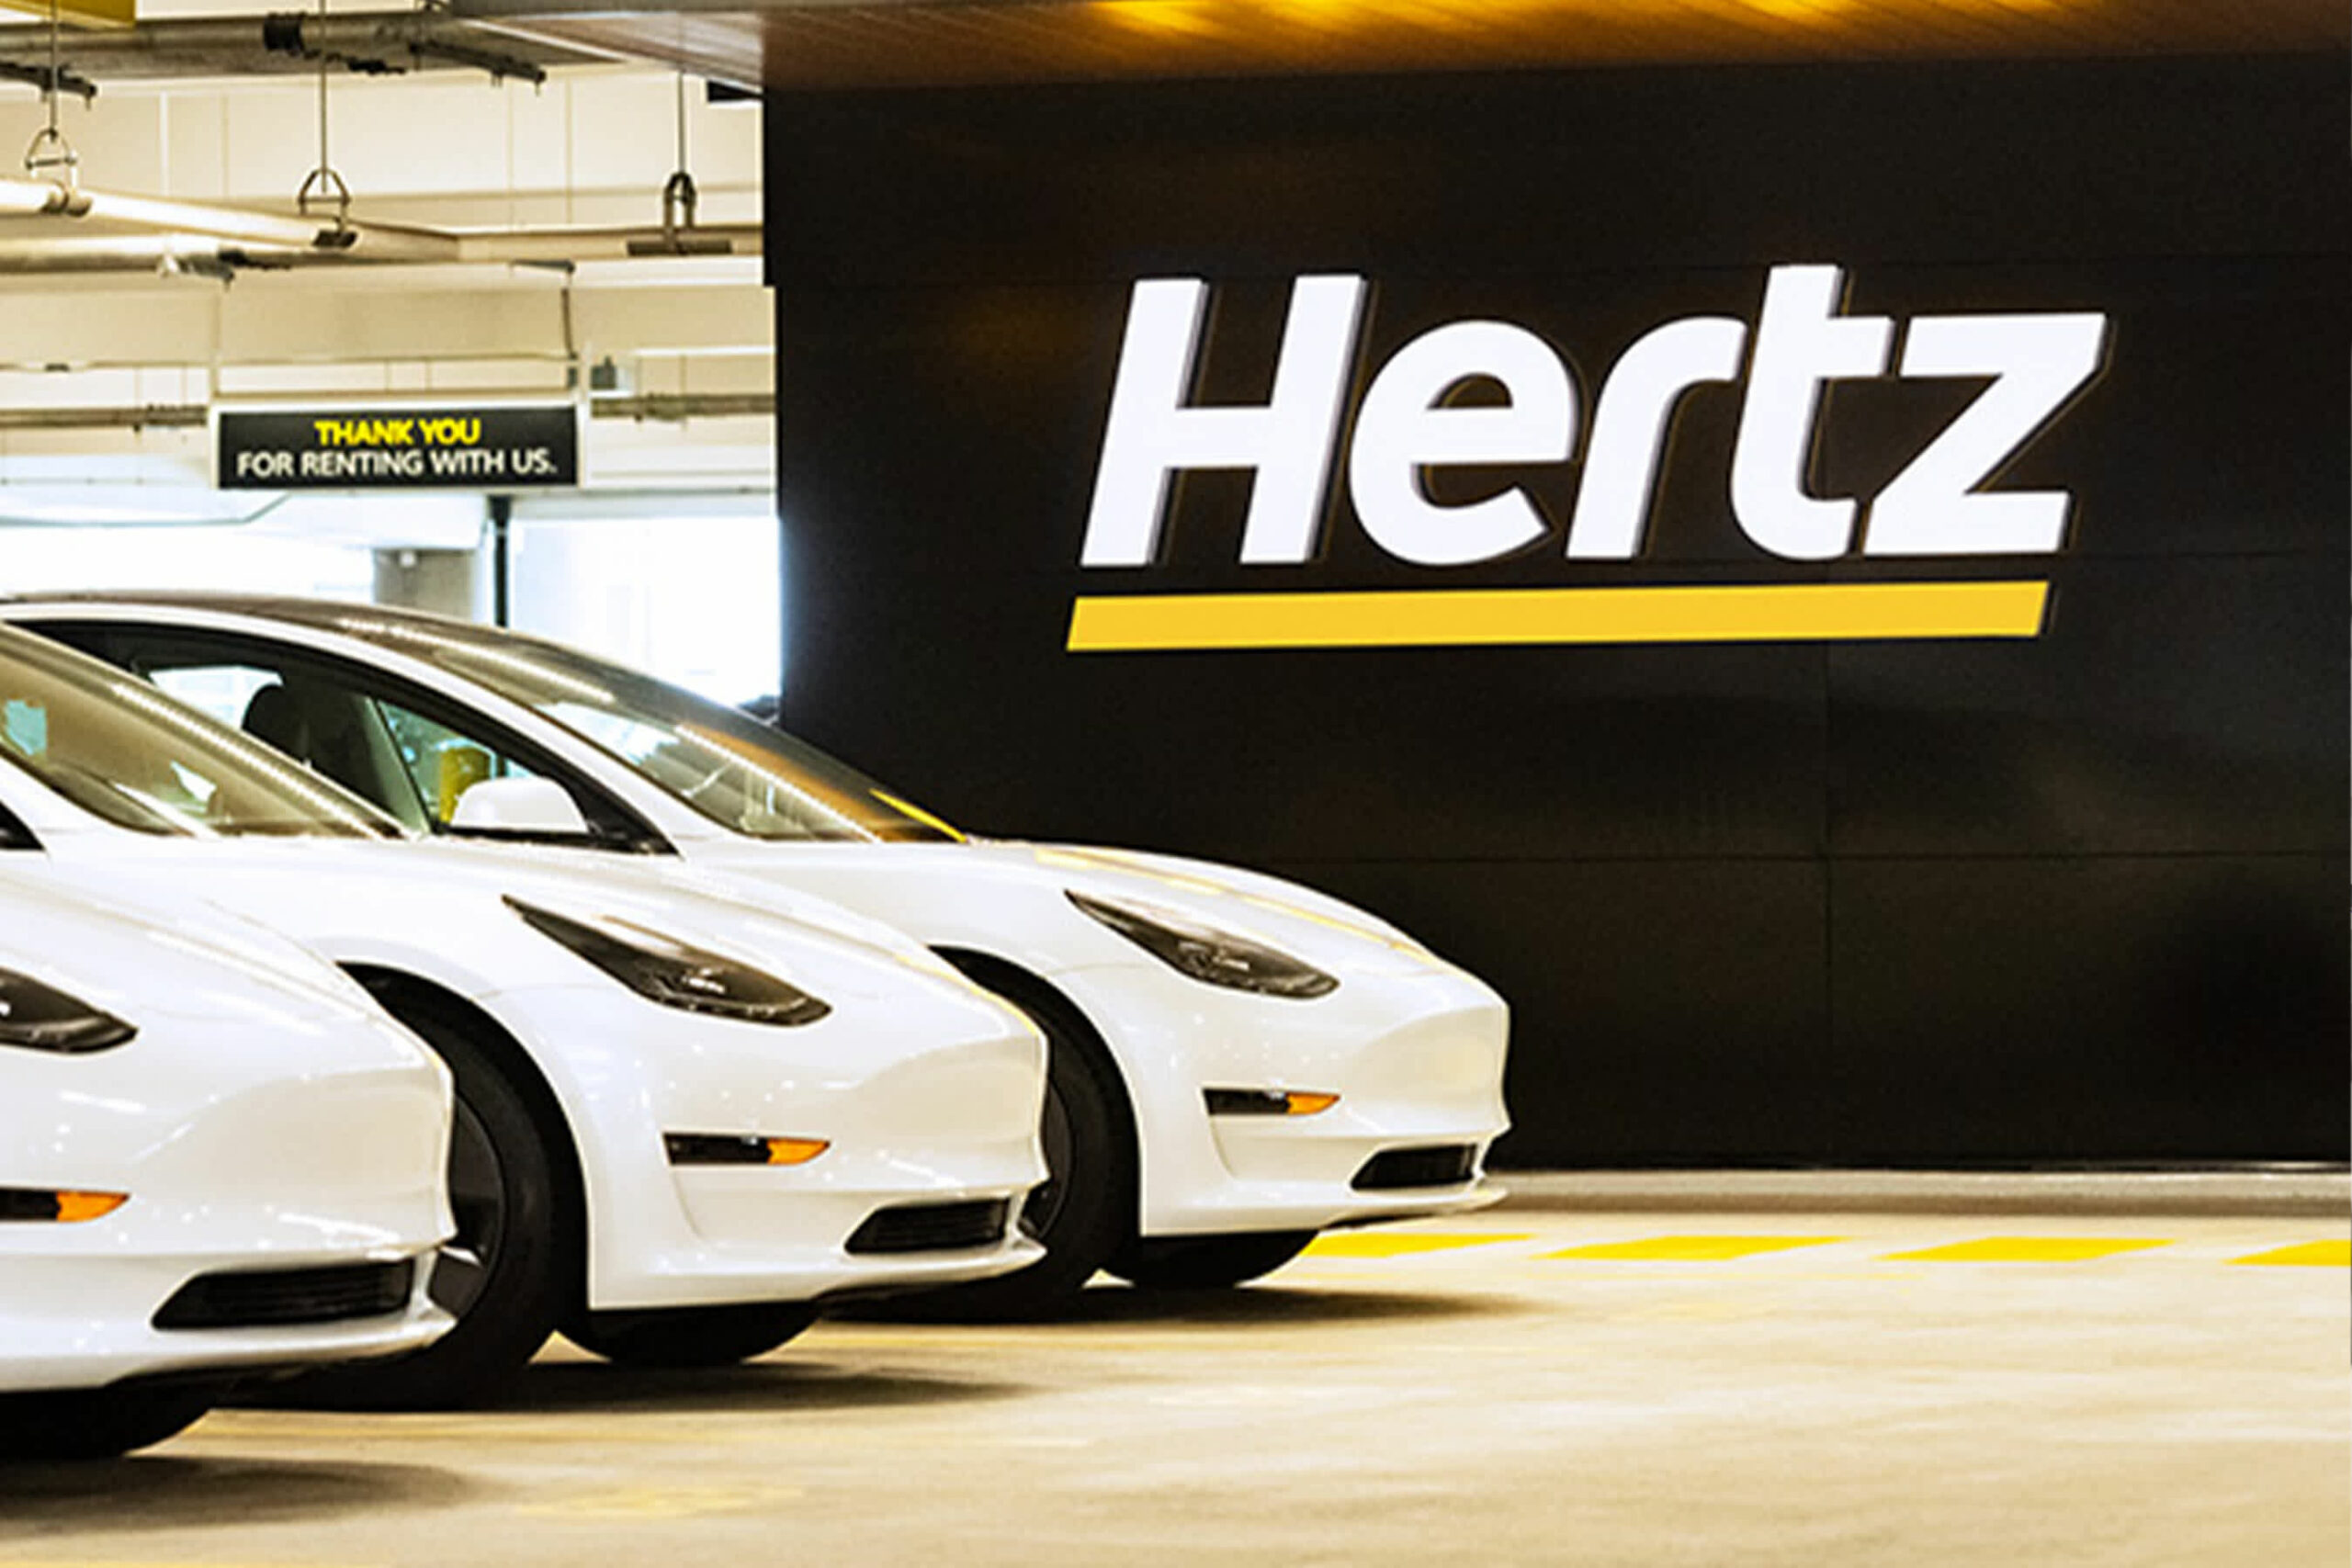 Hertz says Tesla’s already started delivering cars despite Musk tweet